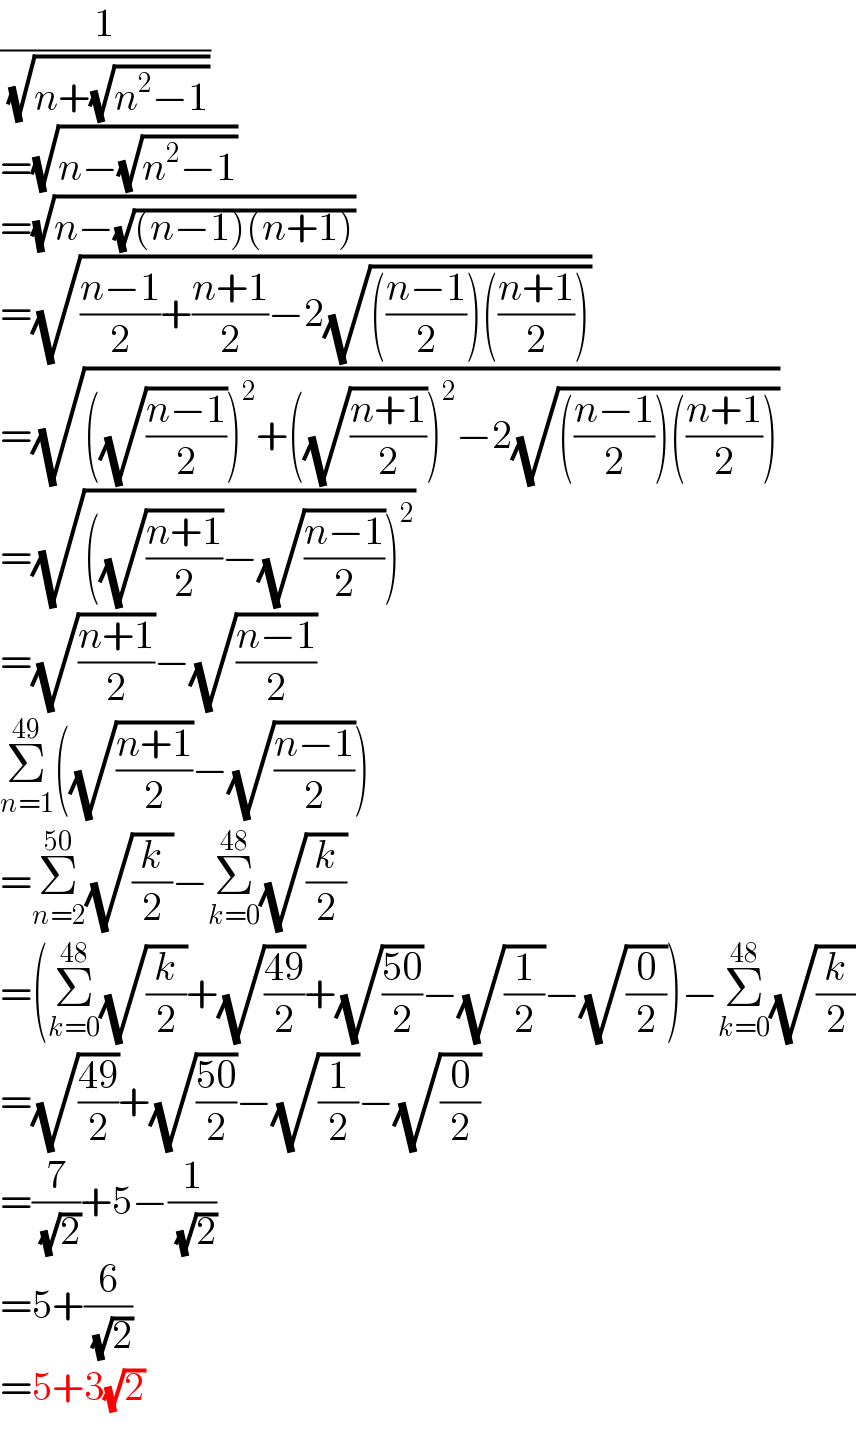 (1/( (√(n+(√(n^2 −1))))))  =(√(n−(√(n^2 −1))))  =(√(n−(√((n−1)(n+1)))))  =(√(((n−1)/2)+((n+1)/2)−2(√((((n−1)/2))(((n+1)/2))))))  =(√(((√((n−1)/2)))^2 +((√((n+1)/2)))^2 −2(√((((n−1)/2))(((n+1)/2))))))  =(√(((√((n+1)/2))−(√((n−1)/2)))^2 ))  =(√((n+1)/2))−(√((n−1)/2))  Σ_(n=1) ^(49) ((√((n+1)/2))−(√((n−1)/2)))  =Σ_(n=2) ^(50) (√(k/2))−Σ_(k=0) ^(48) (√(k/2))  =(Σ_(k=0) ^(48) (√(k/2))+(√((49)/2))+(√((50)/2))−(√(1/2))−(√(0/2)))−Σ_(k=0) ^(48) (√(k/2))  =(√((49)/2))+(√((50)/2))−(√(1/2))−(√(0/2))  =(7/( (√2)))+5−(1/( (√2)))  =5+(6/( (√2)))  =5+3(√2)  